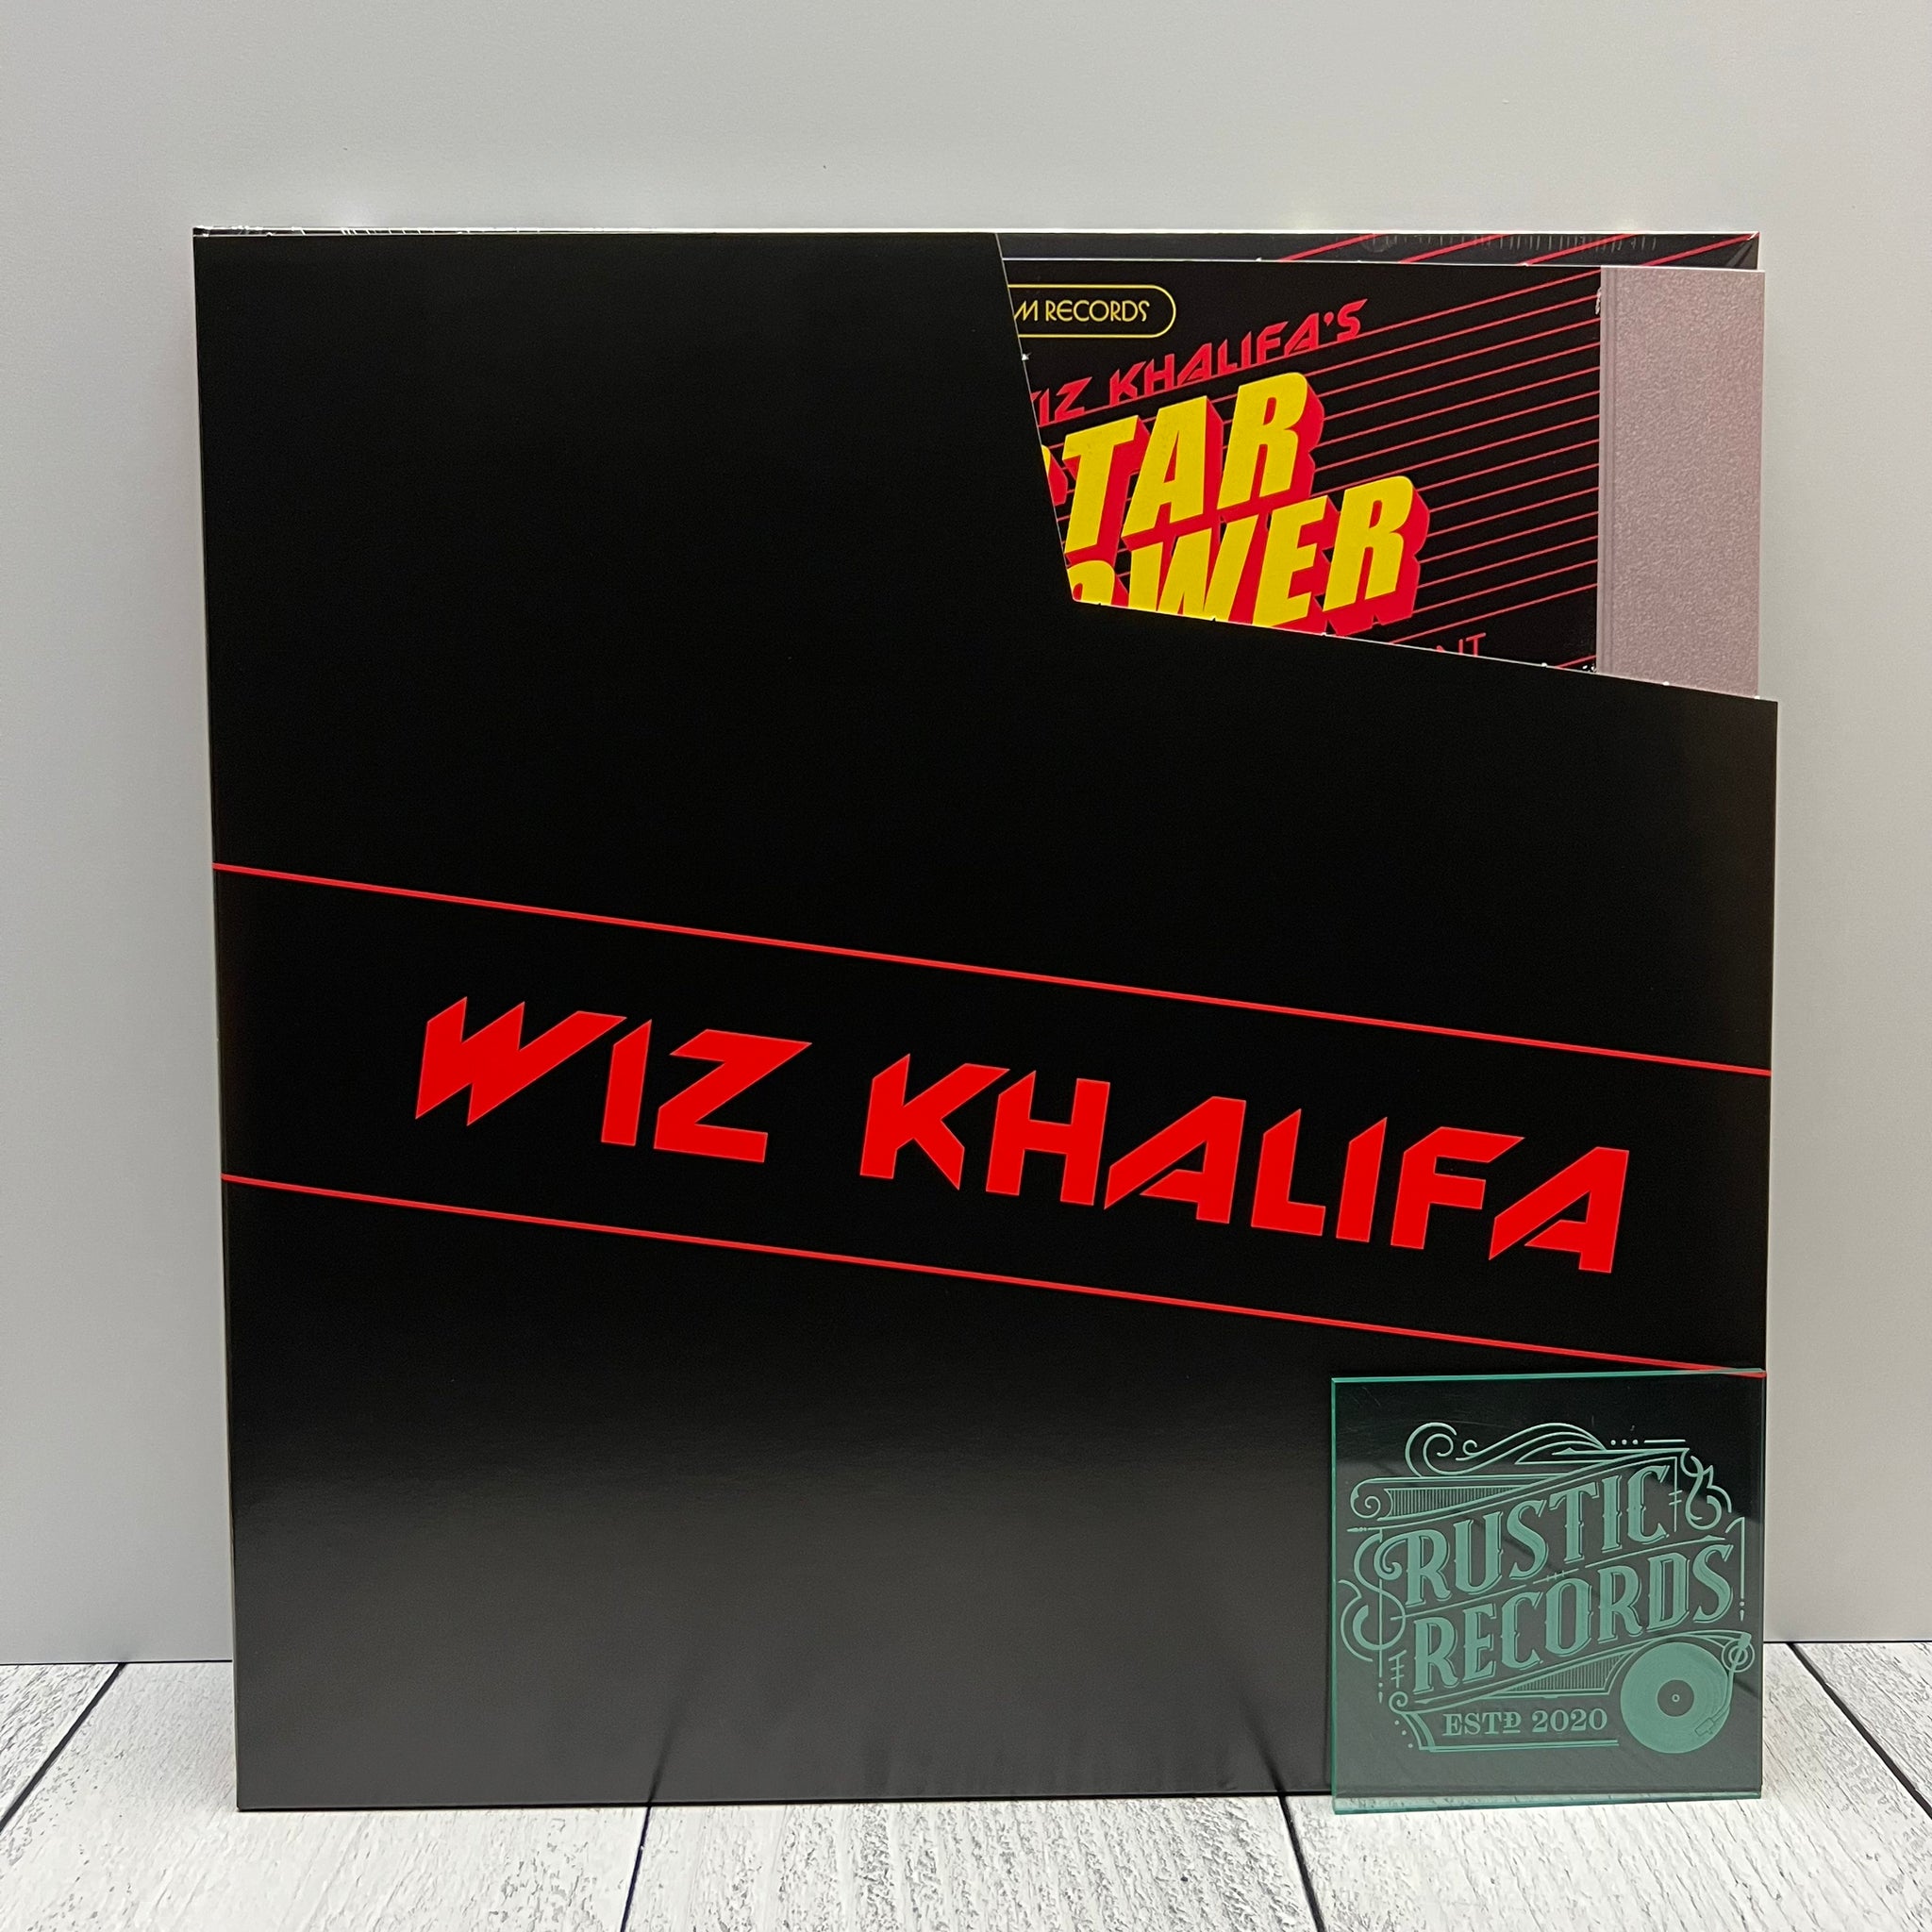 Wiz Khalifa - Star Power (Vinilo de colores)